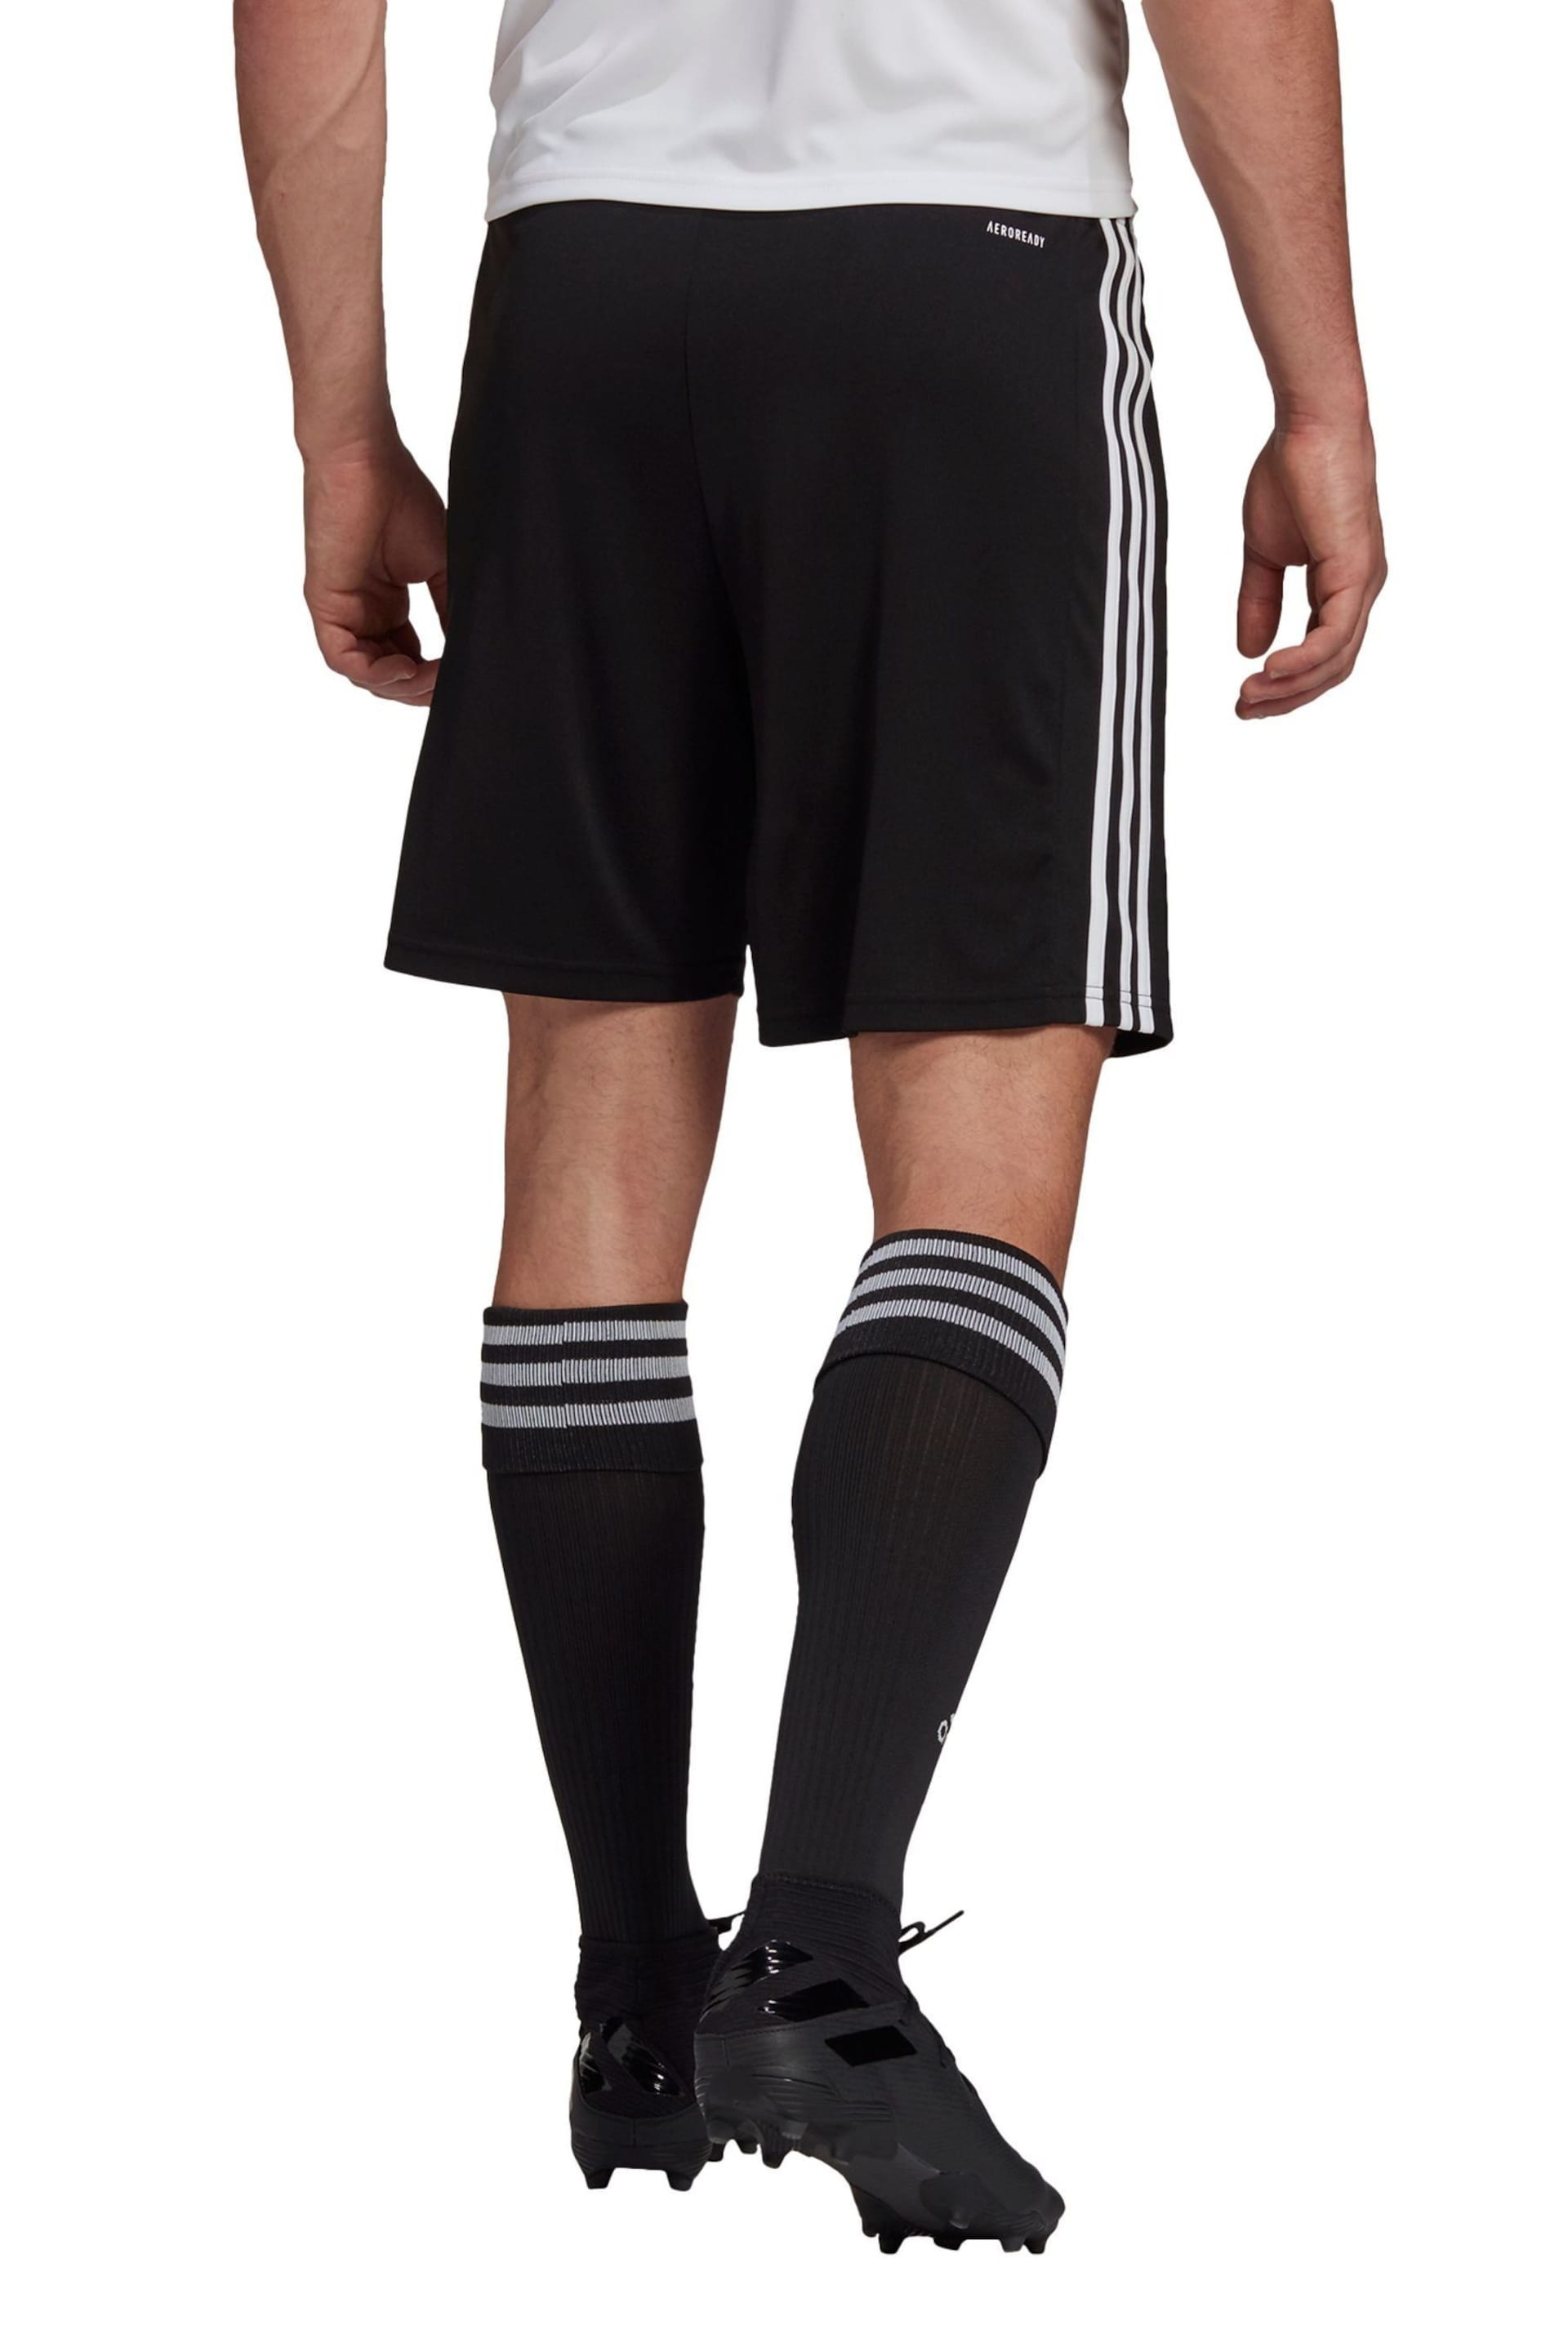 adidas Black Squadra Shorts - Image 2 of 6